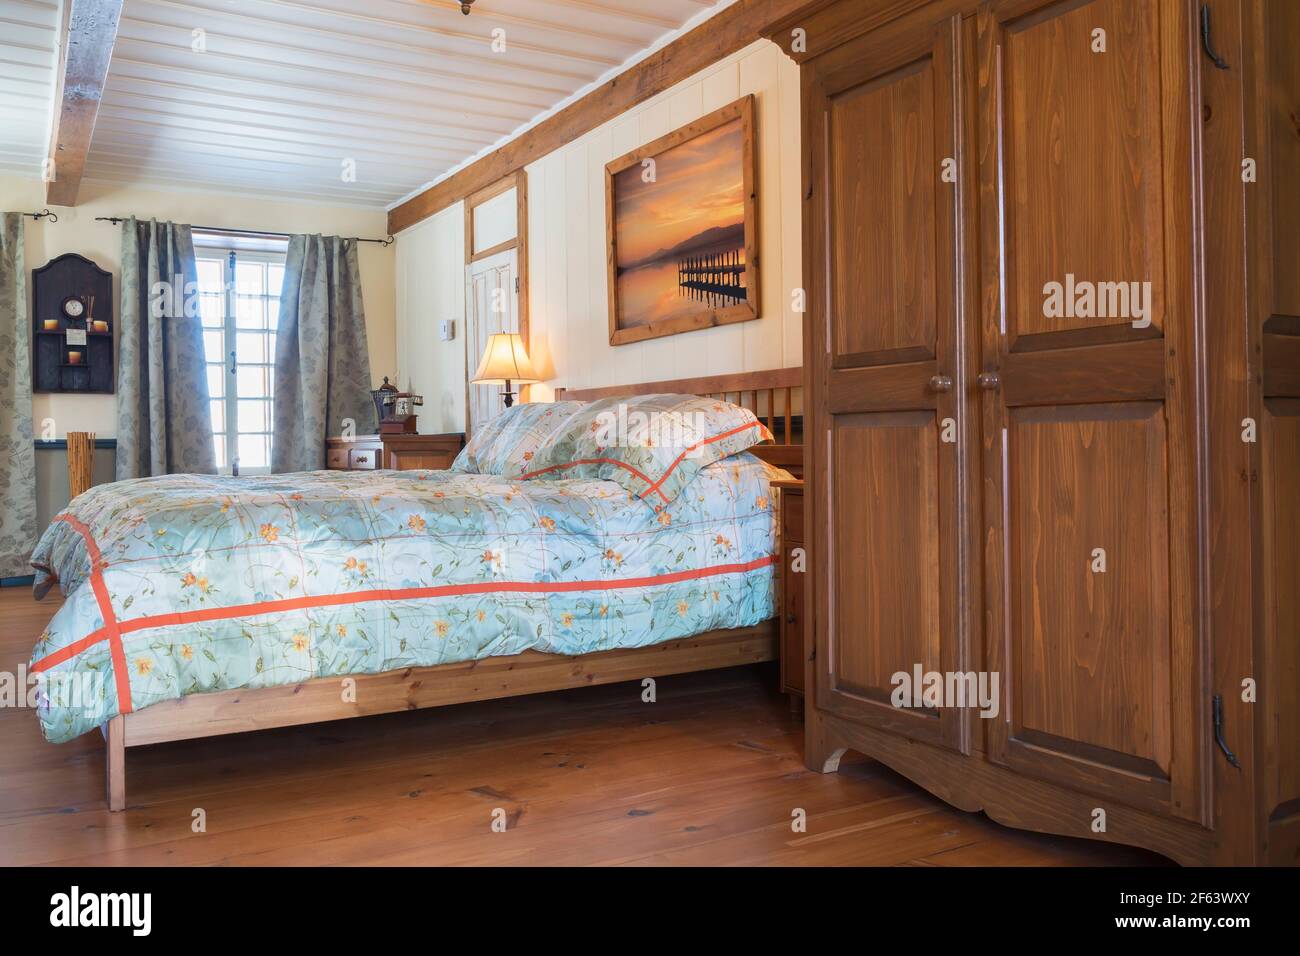 modelo Armario  Ropero de madera, Muebles de dormitorio rústicos, Diseños  de camas de madera